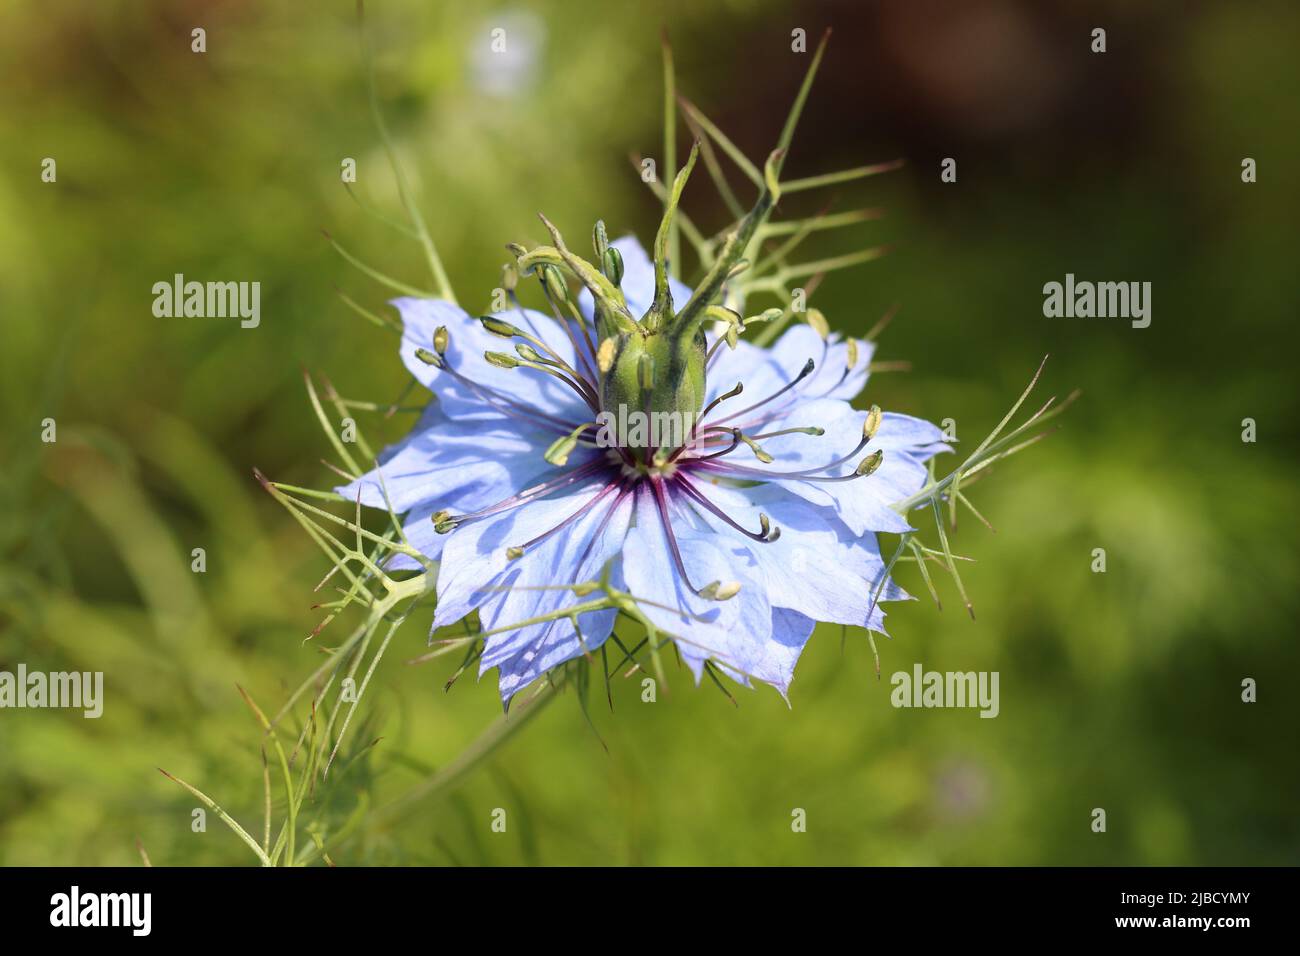 Nahaufnahme einer schönen hellblauen Nigella damascena Blume vor einem verschwommenen grünen Hintergrund Stockfoto